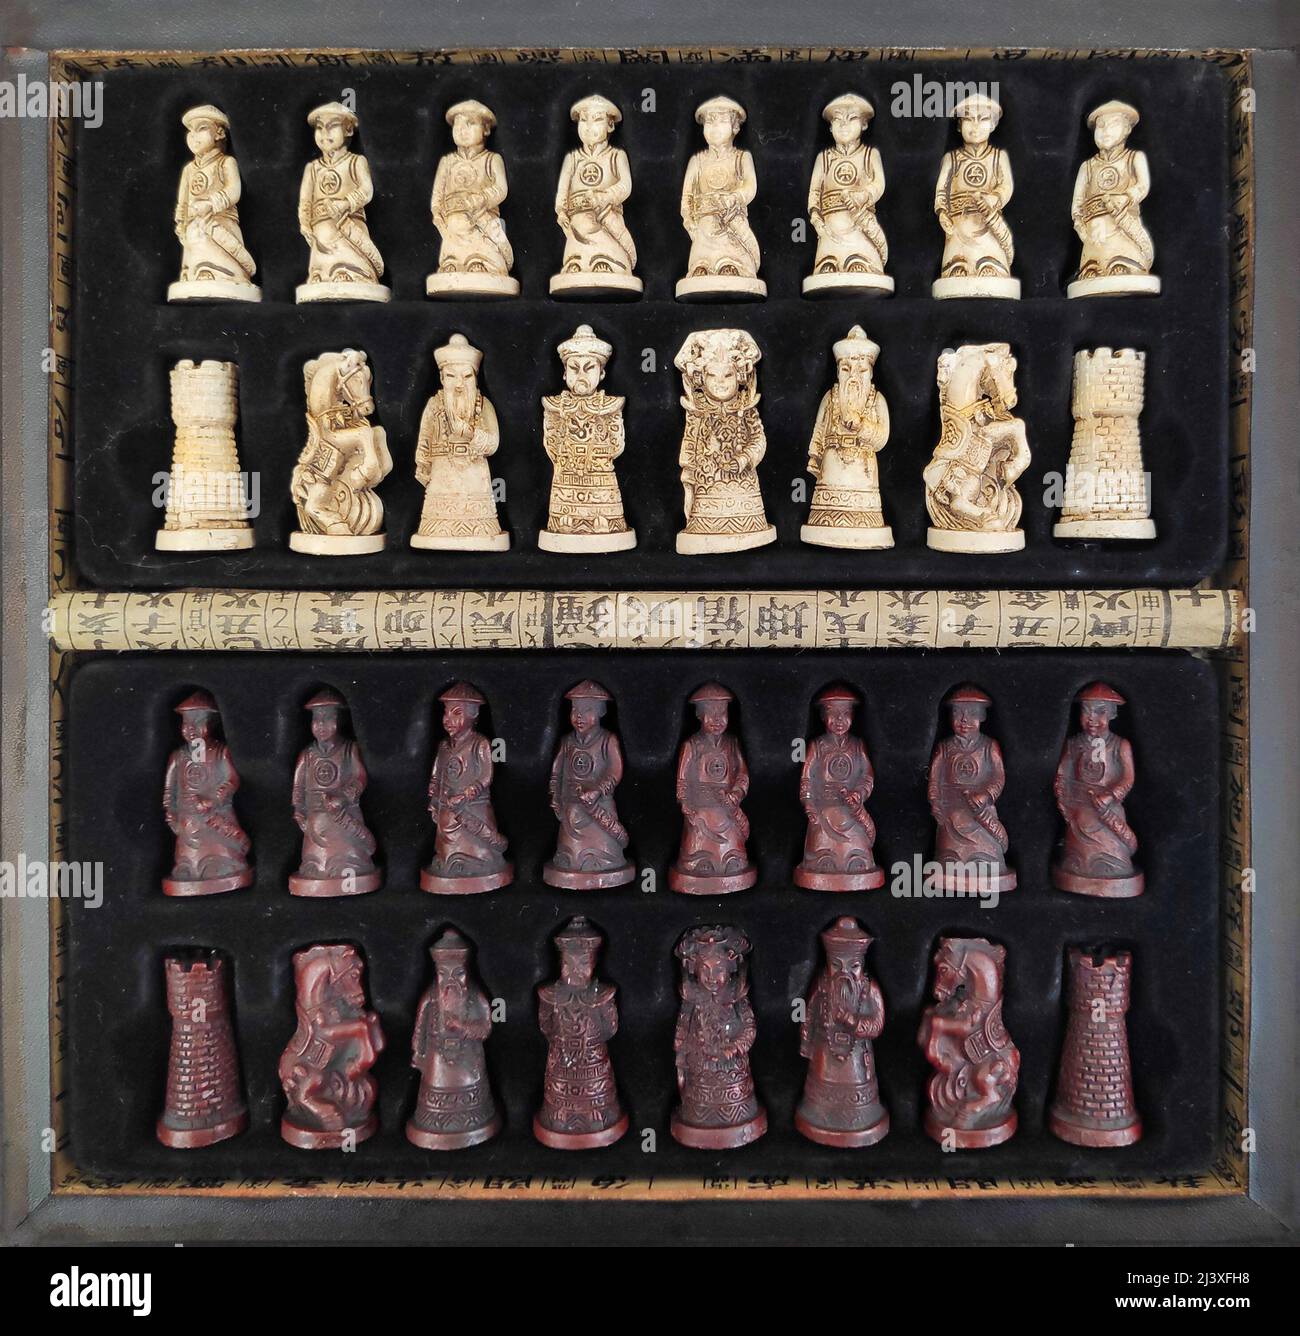 Eine lederbezogene Holzkiste, gefüllt mit Schachfiguren im chinesischen Stil. Stockfoto